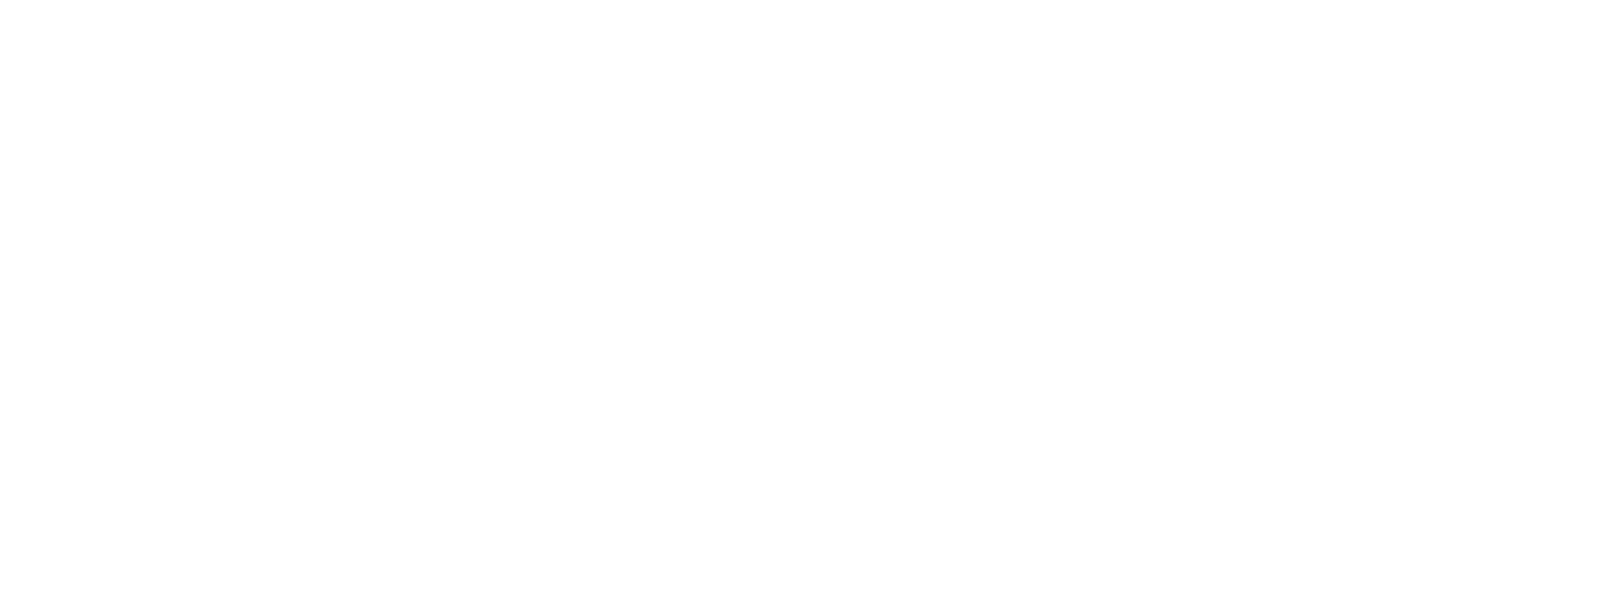 District 6630 logo